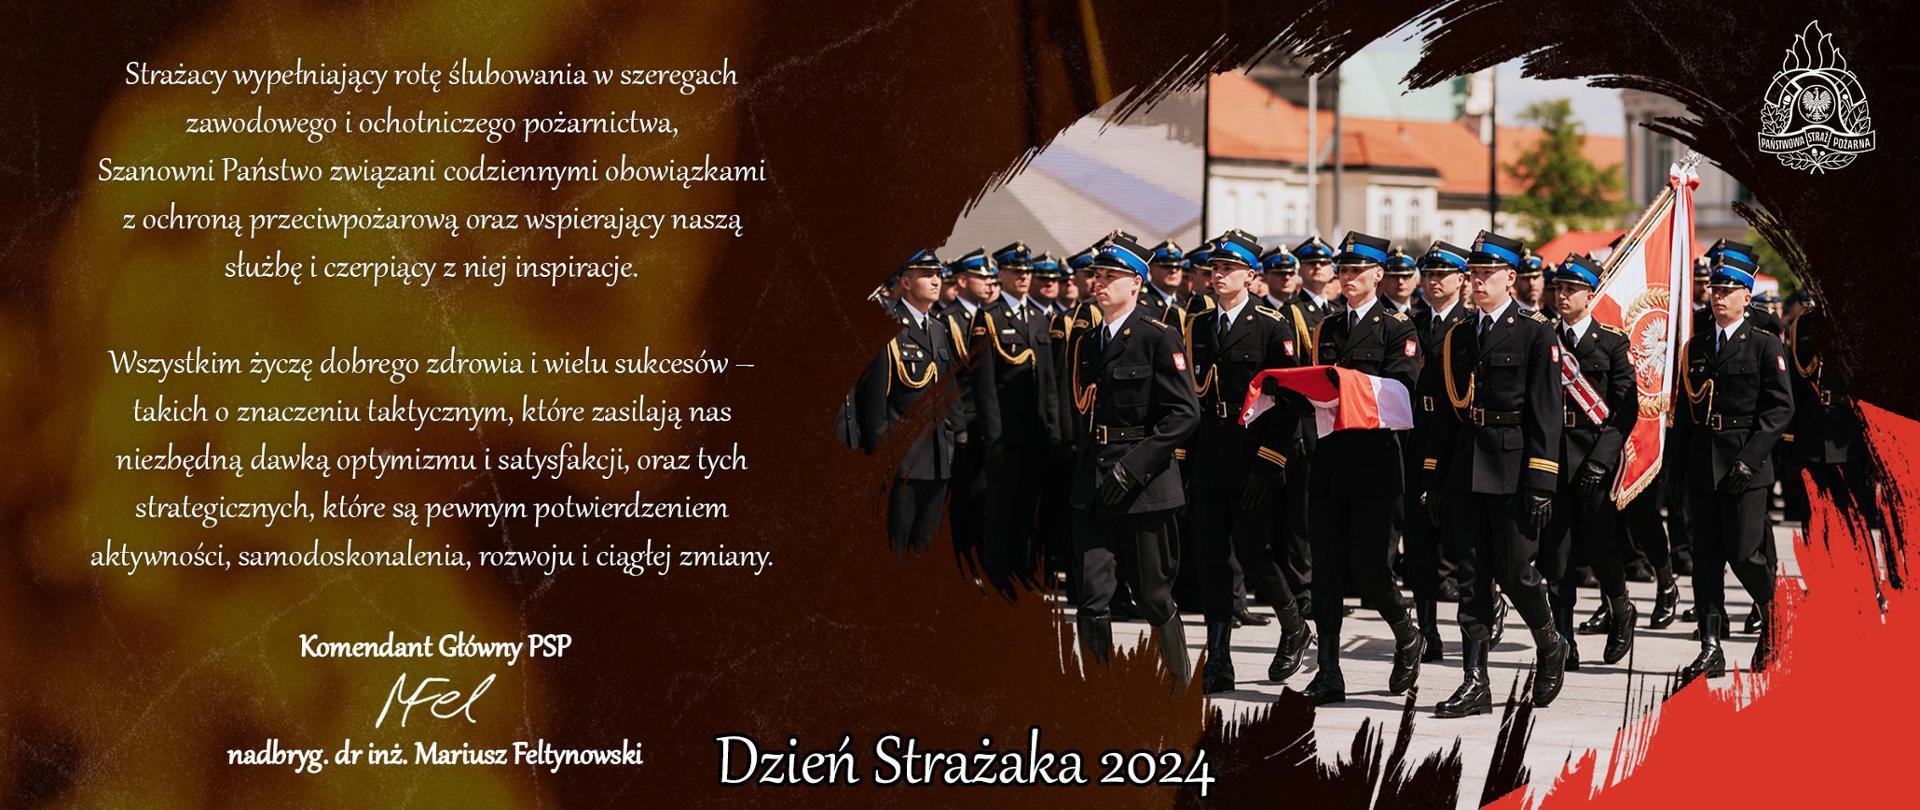 Życzenia Komendanta Głównego PSP Dzień Strażaka 2024